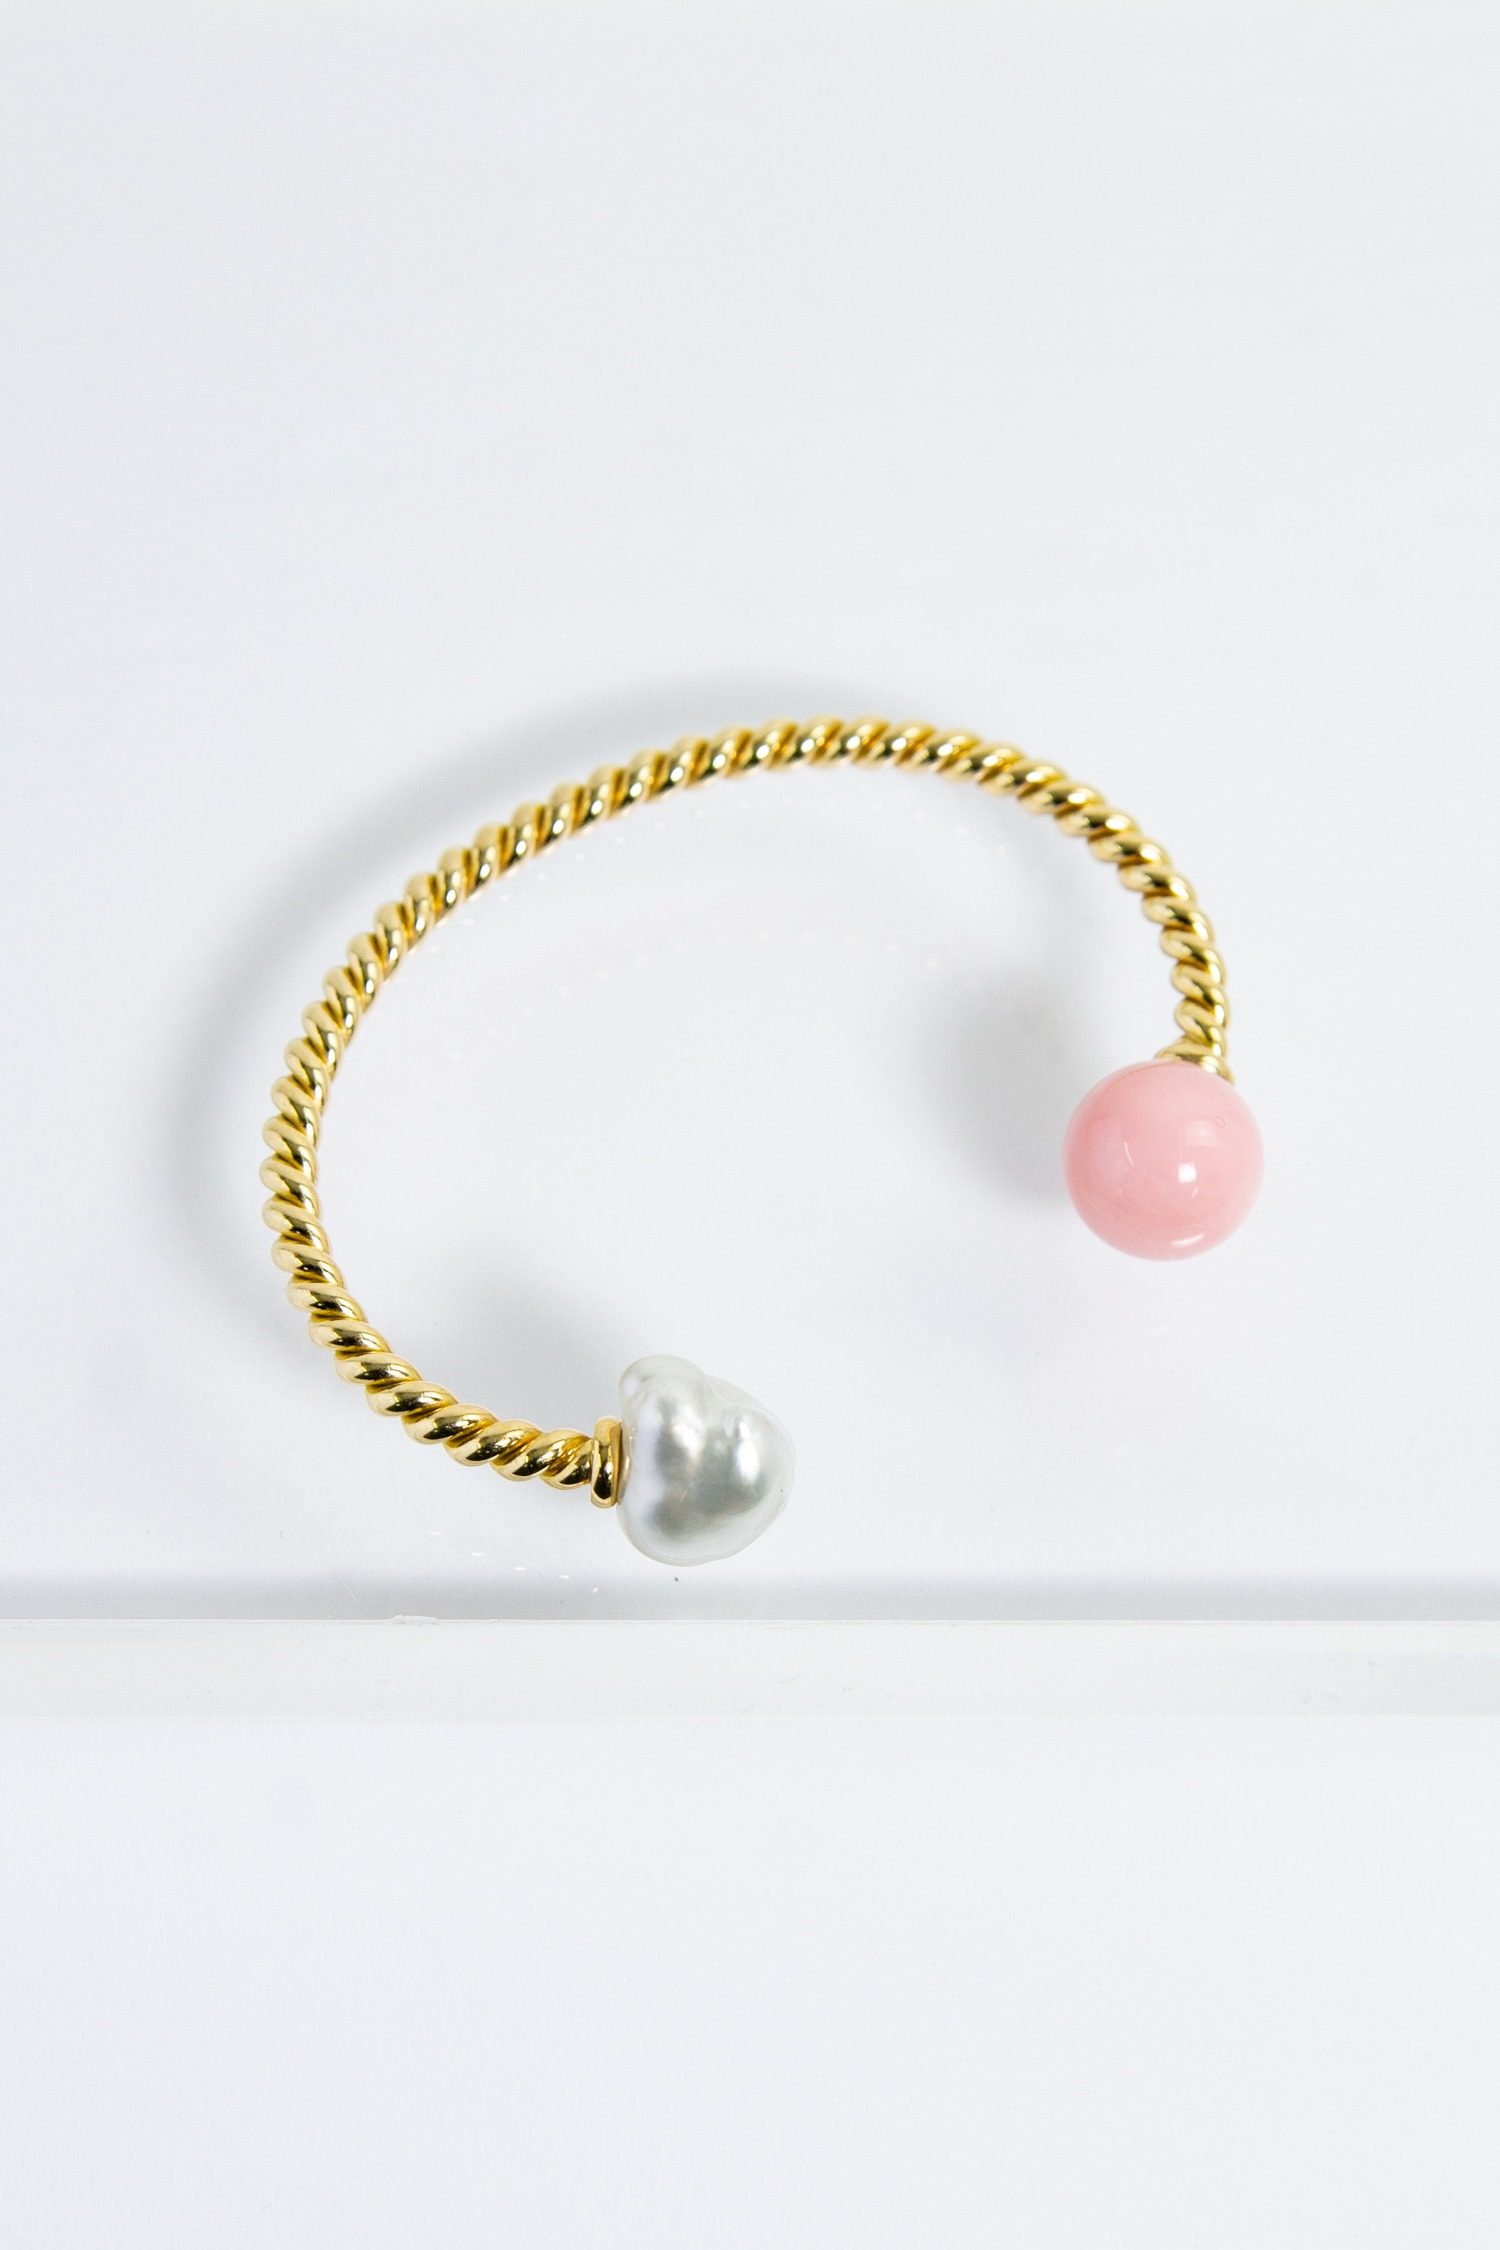 Sophie Keegan Armreif "Rope Cuff" mit einer Süßwasser-Perle und einem pinken Opal